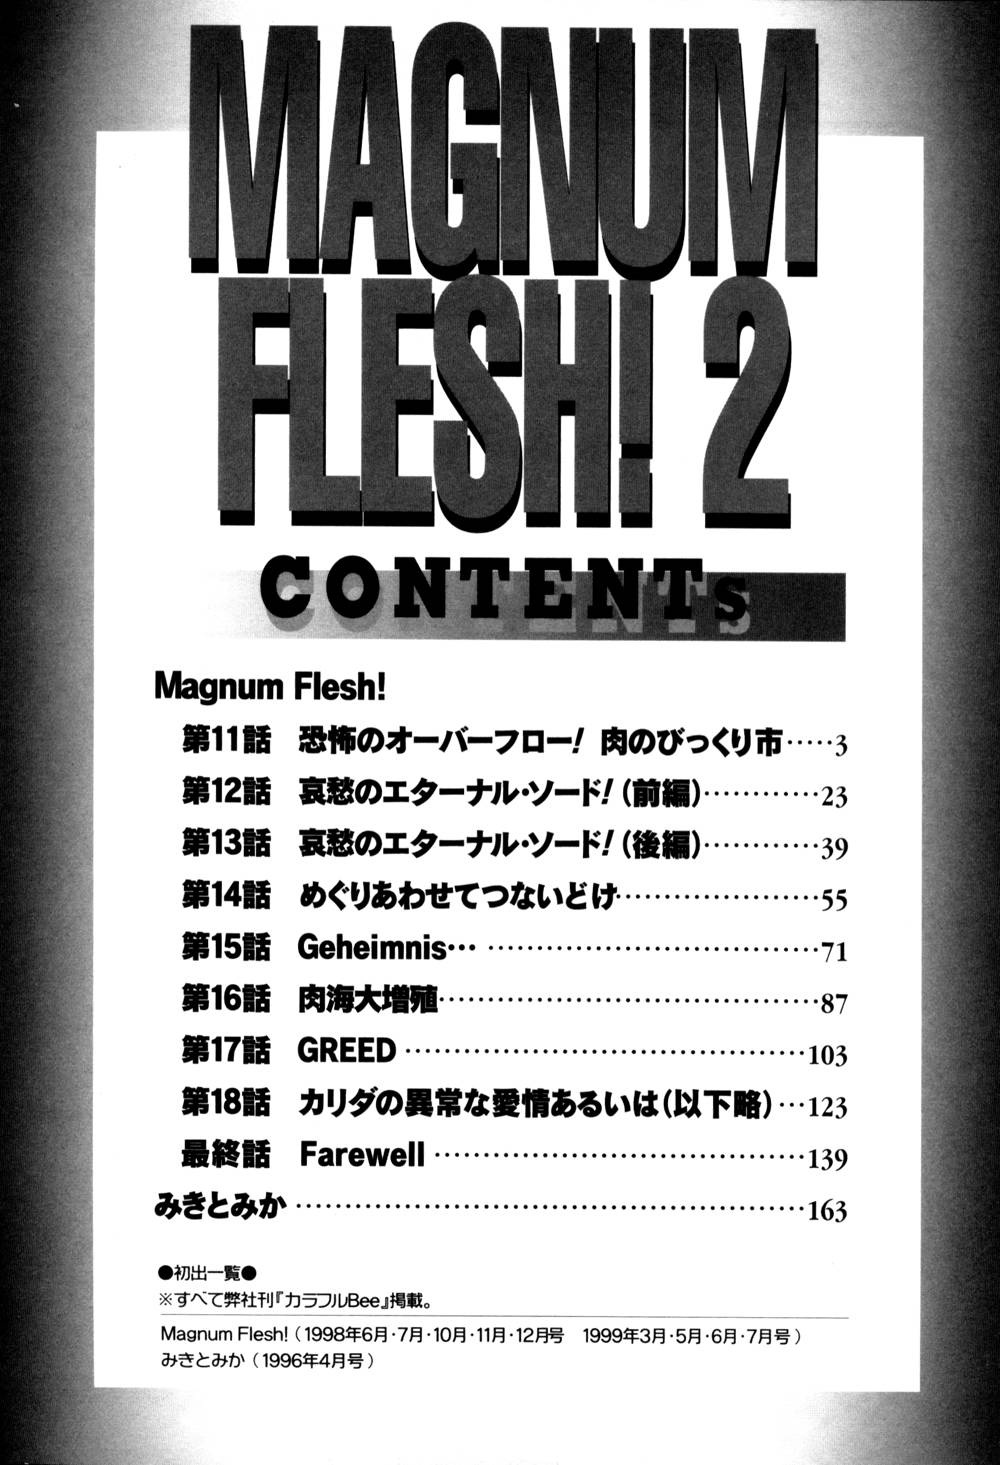 [キャプテン キーゼル]Magnum Flesh! 2[J]